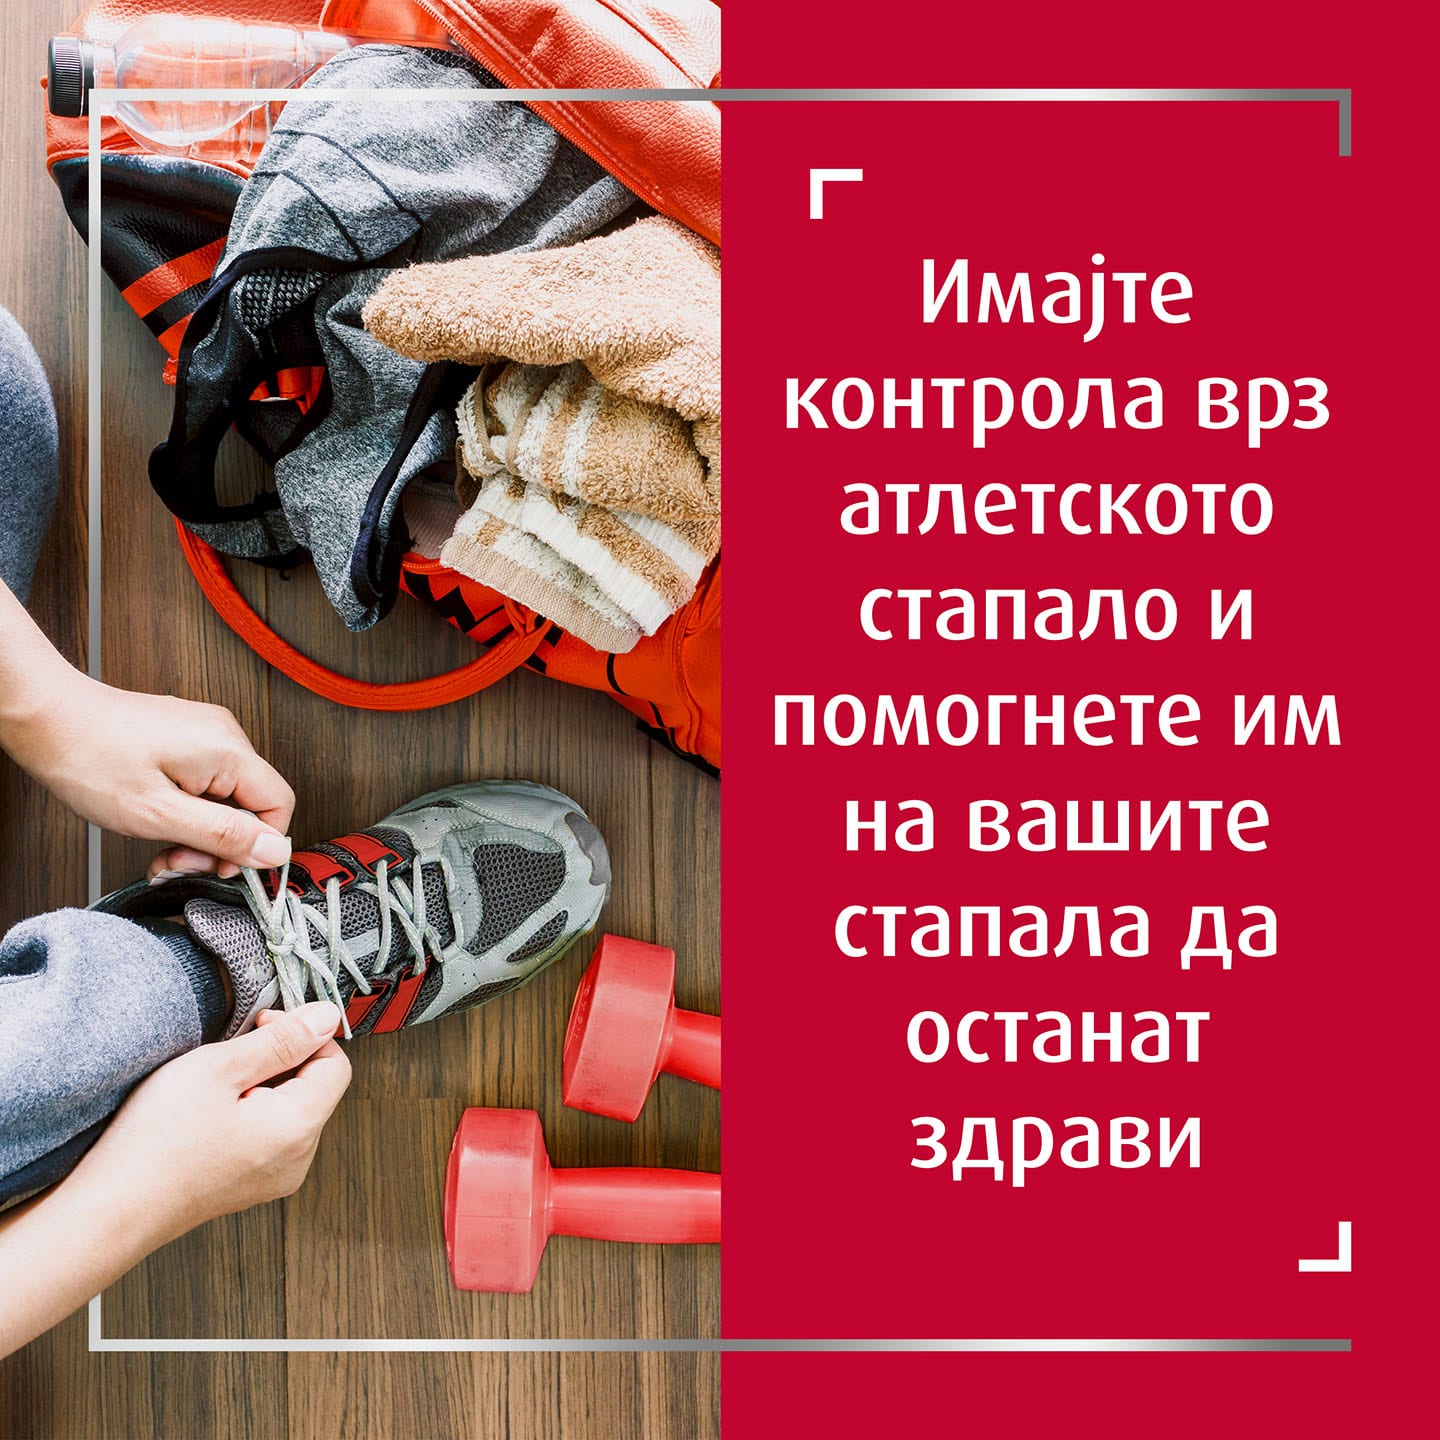 Лице што вежба, врзува сива обувка покрај легнати тегови во теретана, со натпис десно: Преземете ја контролата врз габичната инфекција на стапалата и помогнете им на вашите стапала да оздрават